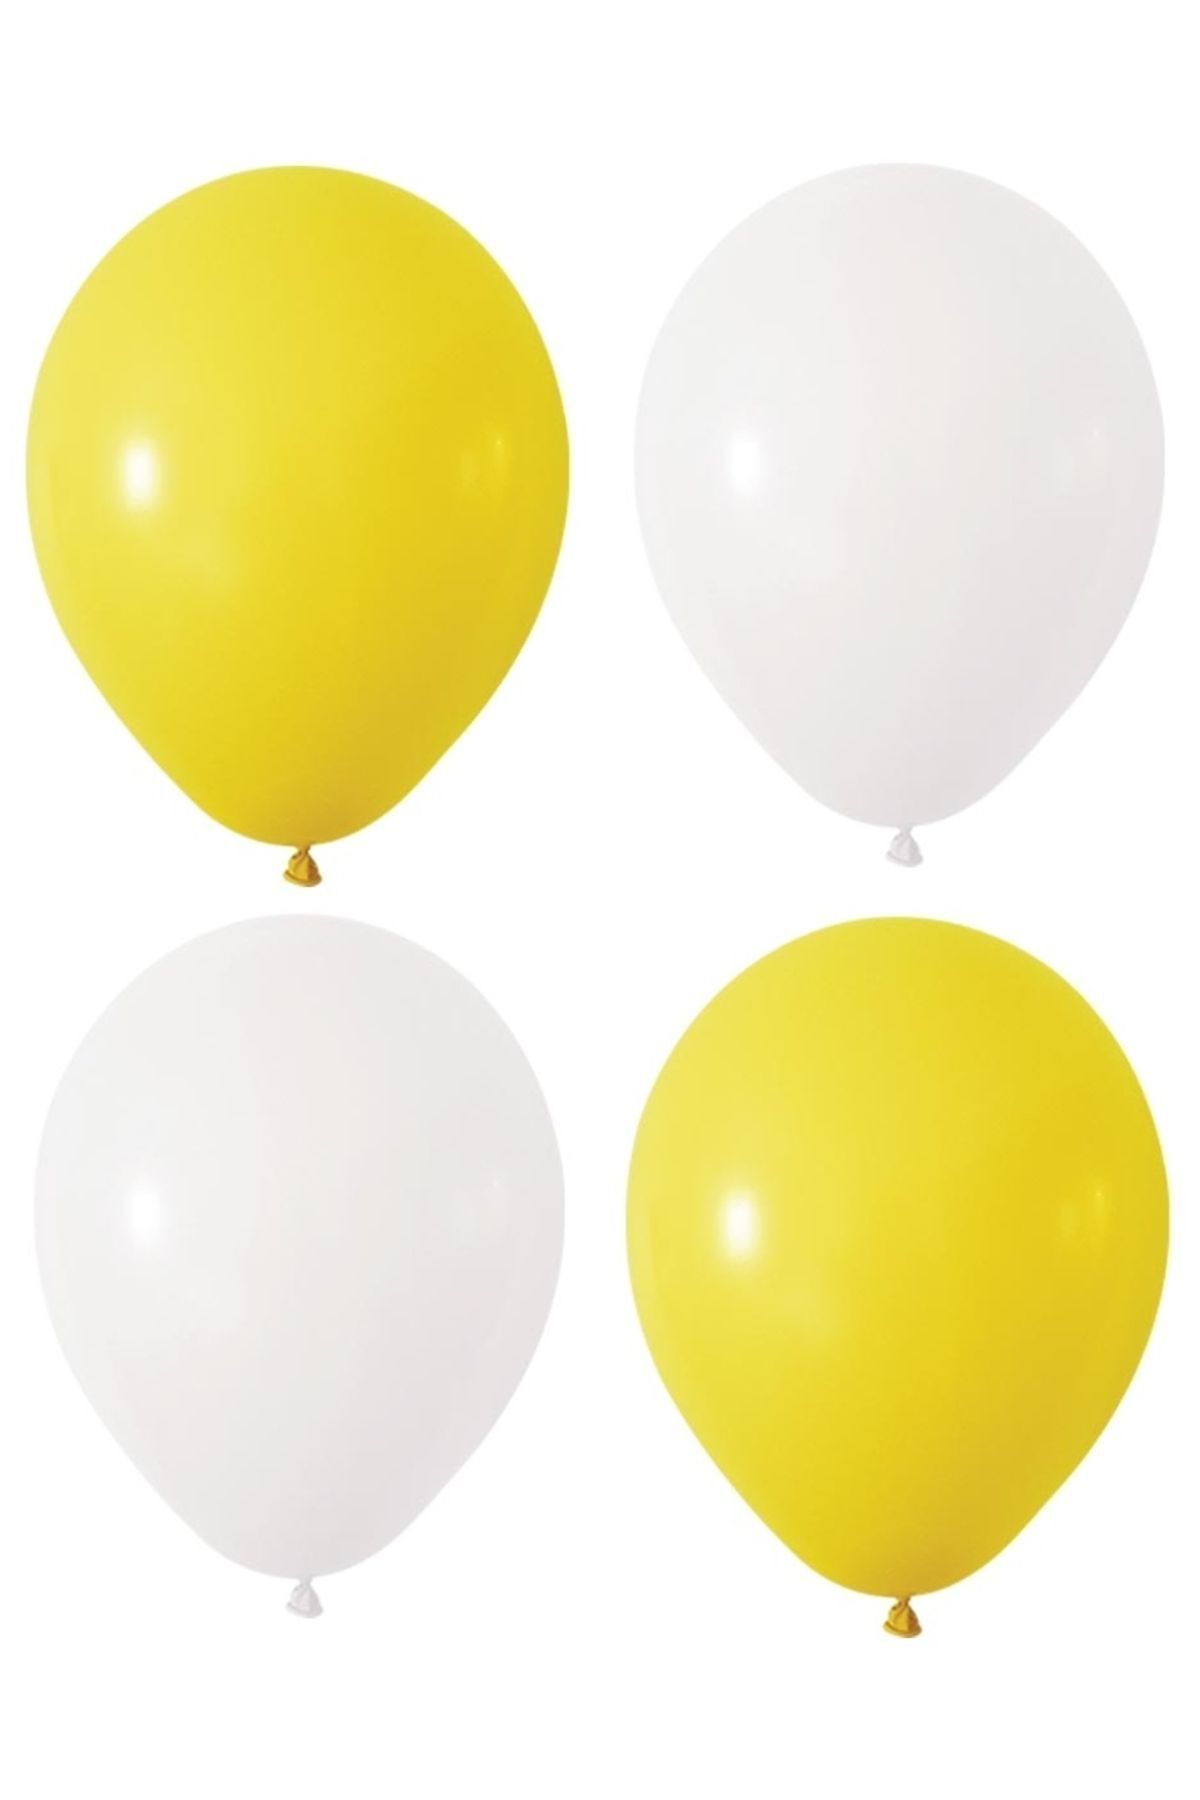 HKNYS Sarı Beyaz Renk Pastel Lateks Balon 100 Adet +Balon Zinciri Hediye